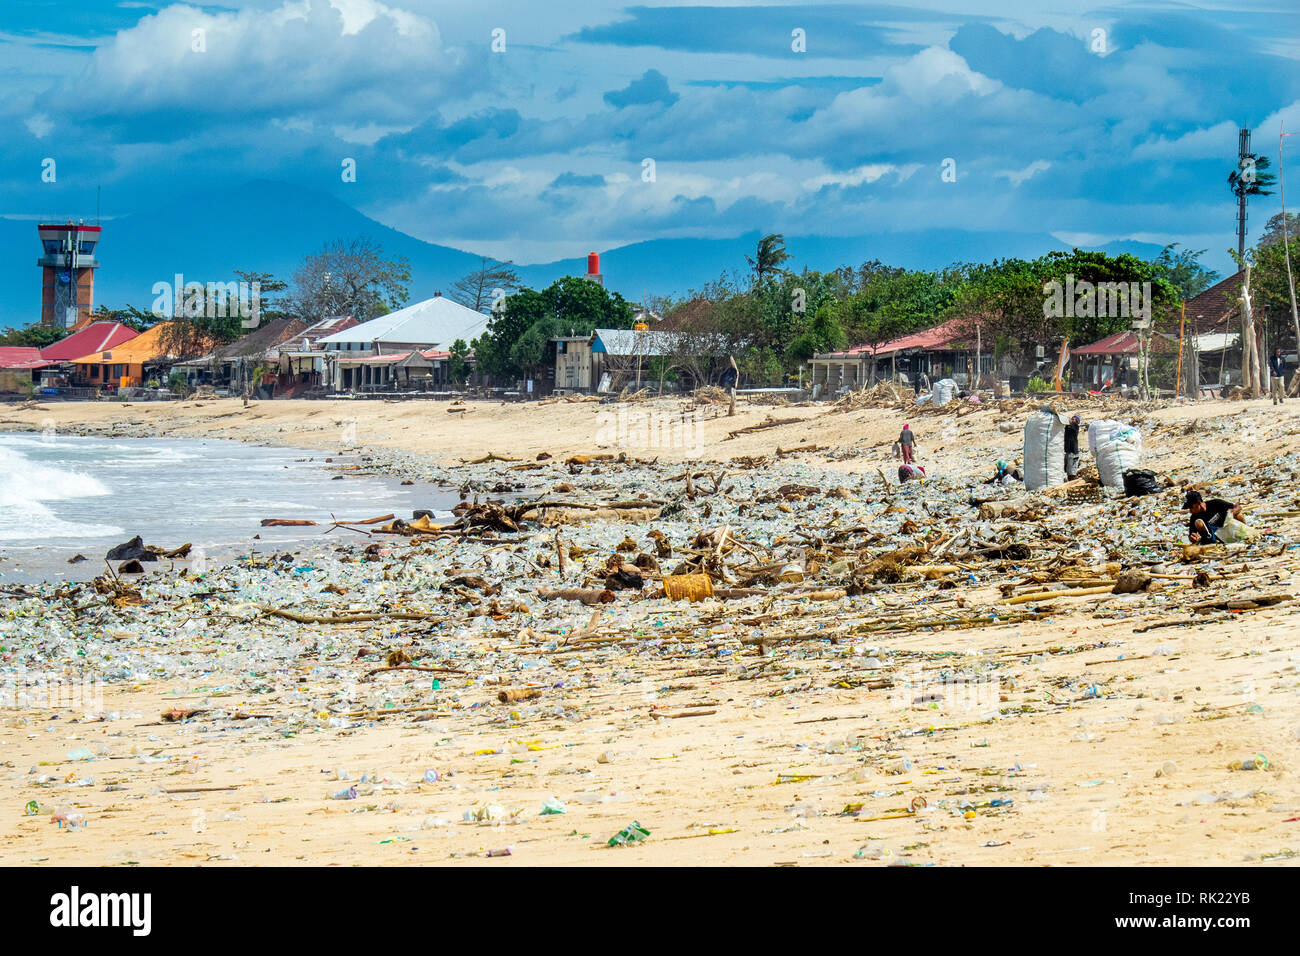 La pollution des bouteilles en plastique, des tasses, des pailles et autres détritus rejetés sur la plage de La Baie de Jimbaran, Bali Indonésie. Banque D'Images